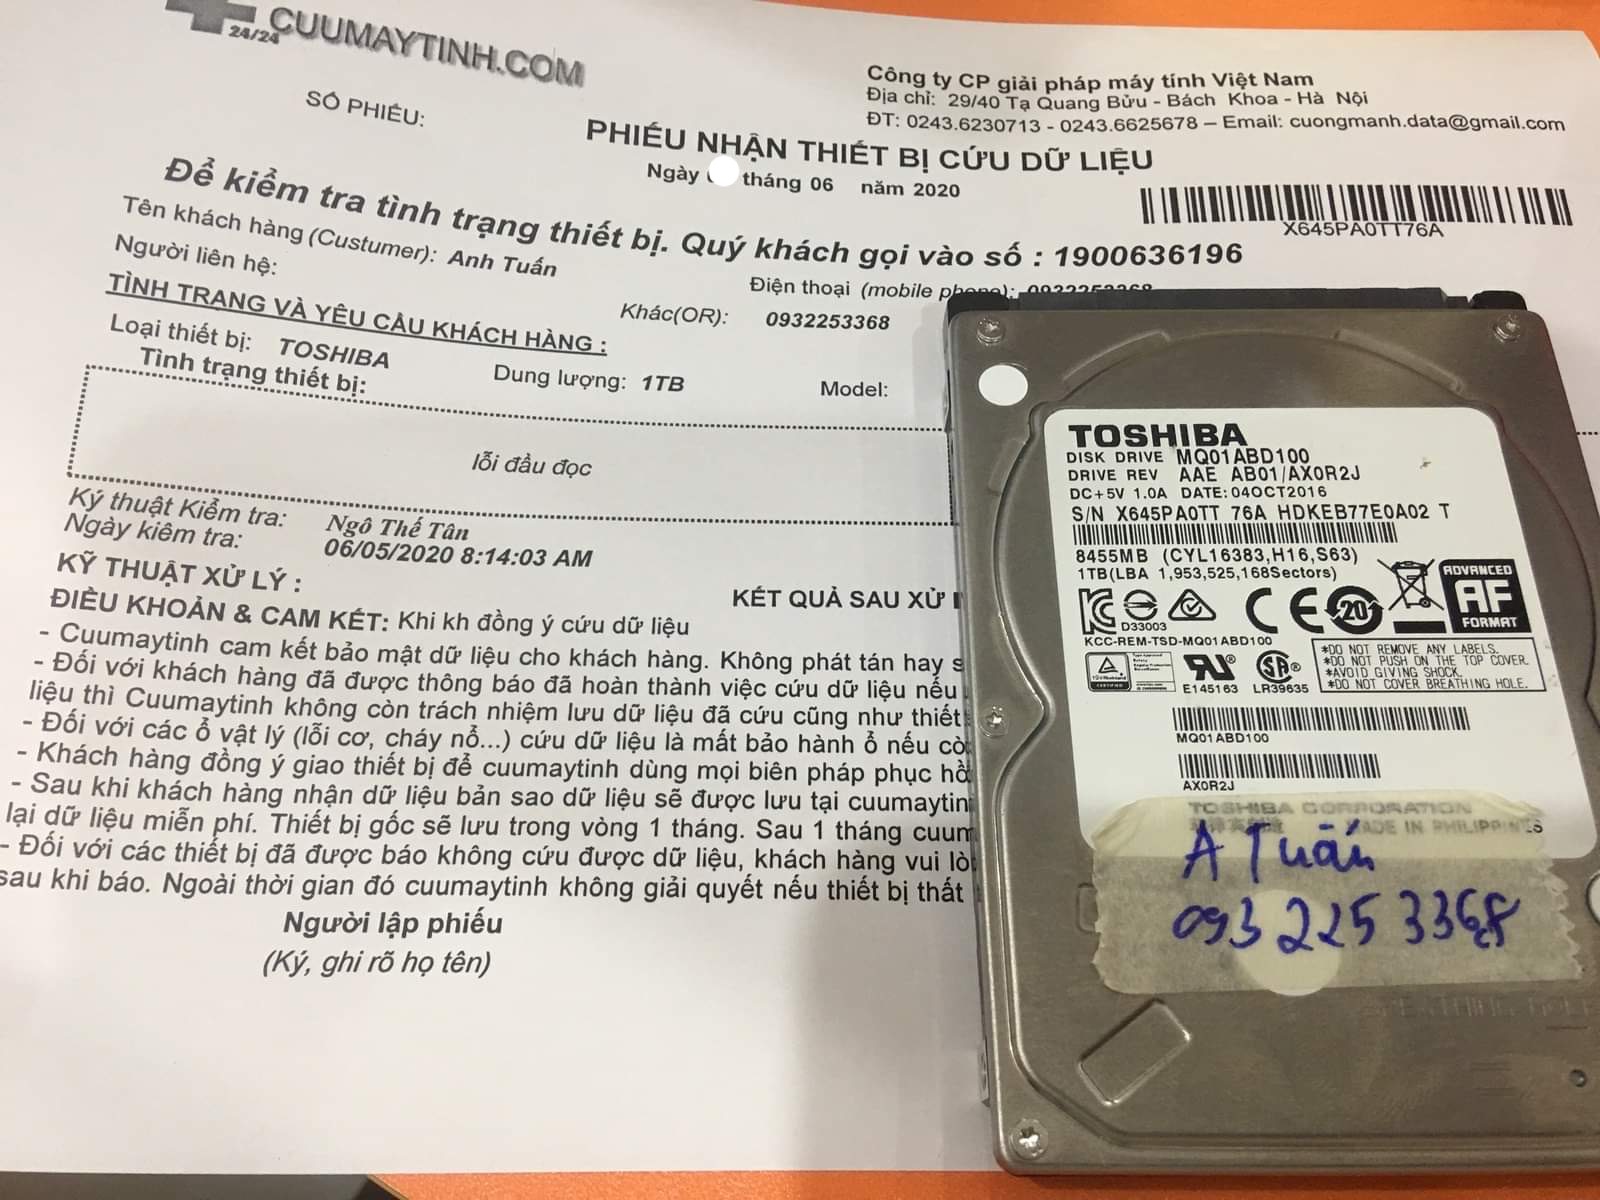 Khôi phục dữ liệu ổ cứng Toshiba 1TB lỗi đầu đọc 12/06/2020 - cuumaytinh